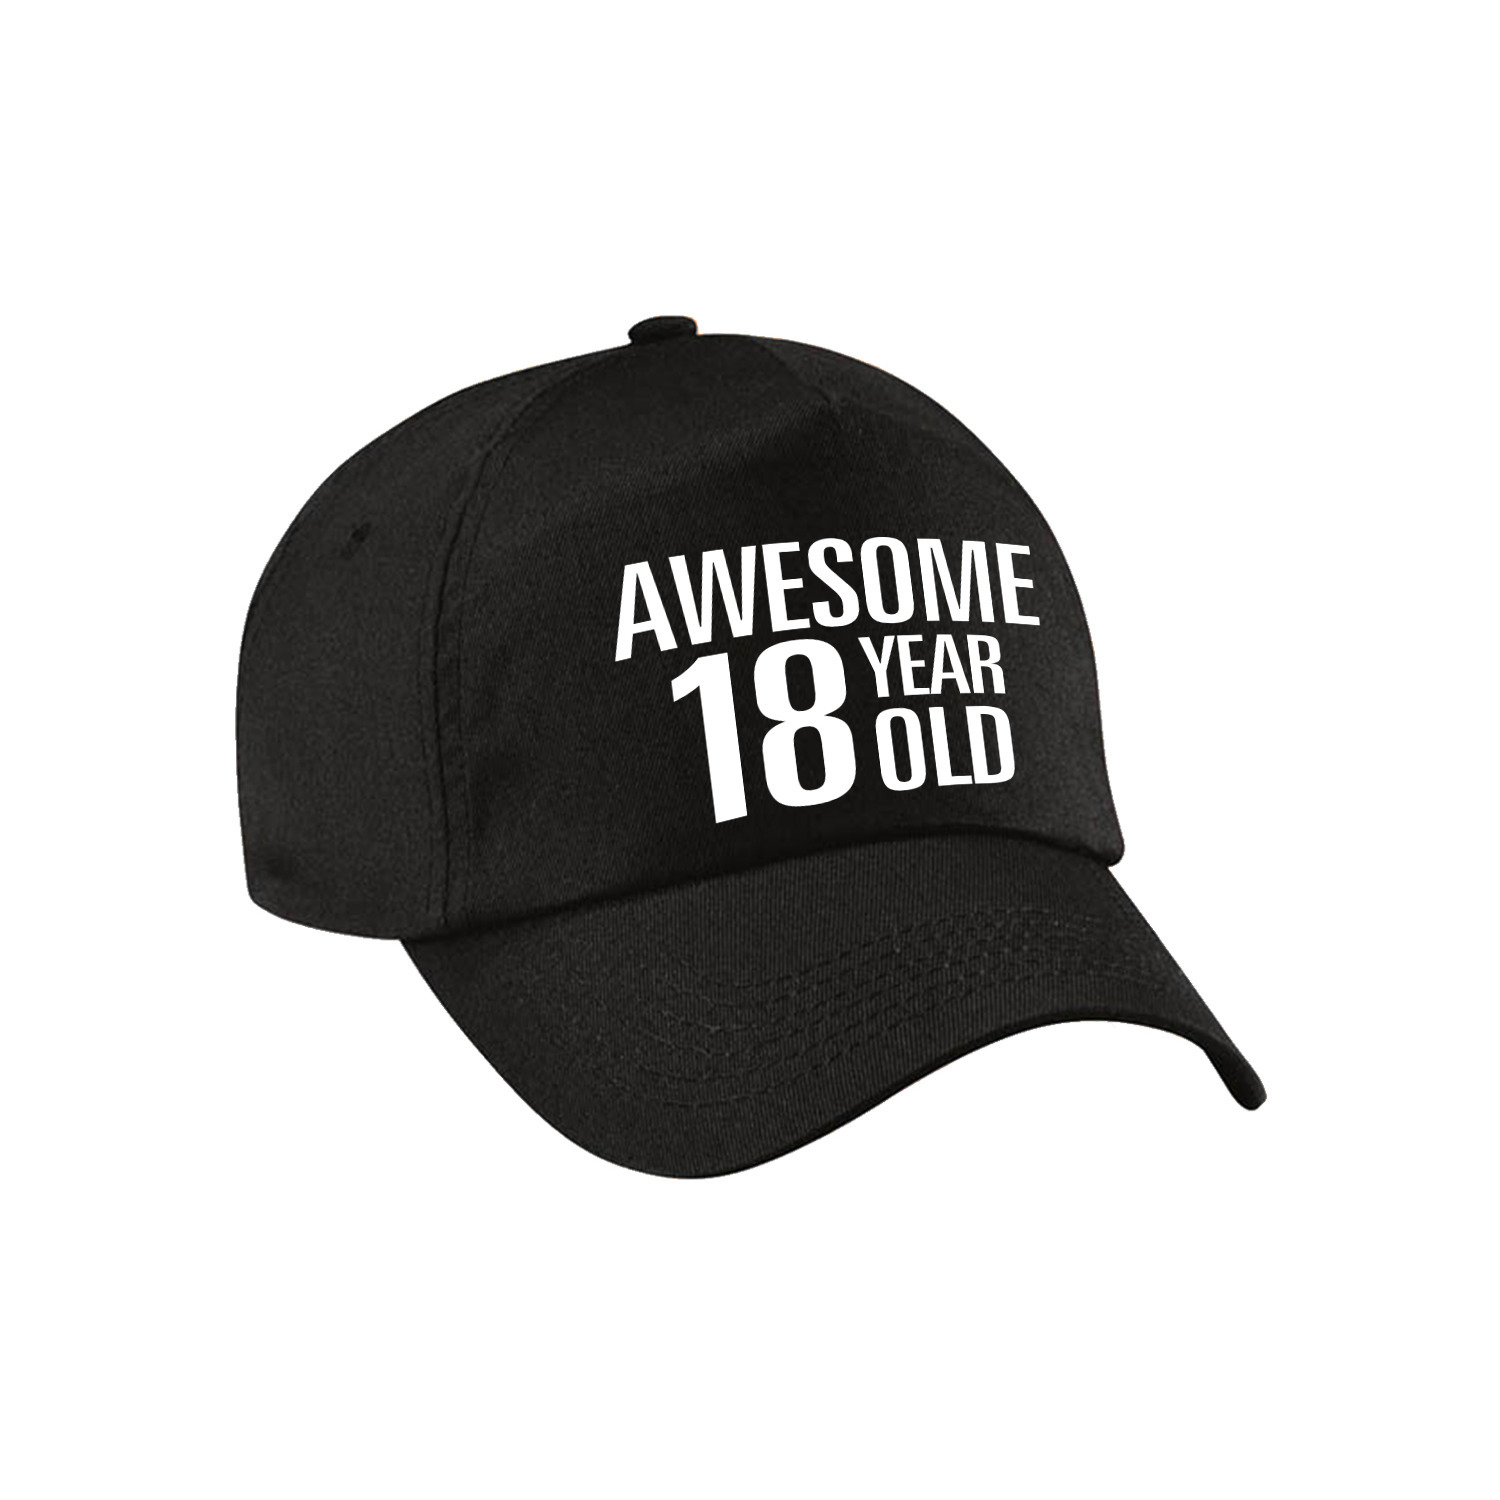 Awesome 18 year old verjaardag pet-cap zwart voor dames en heren